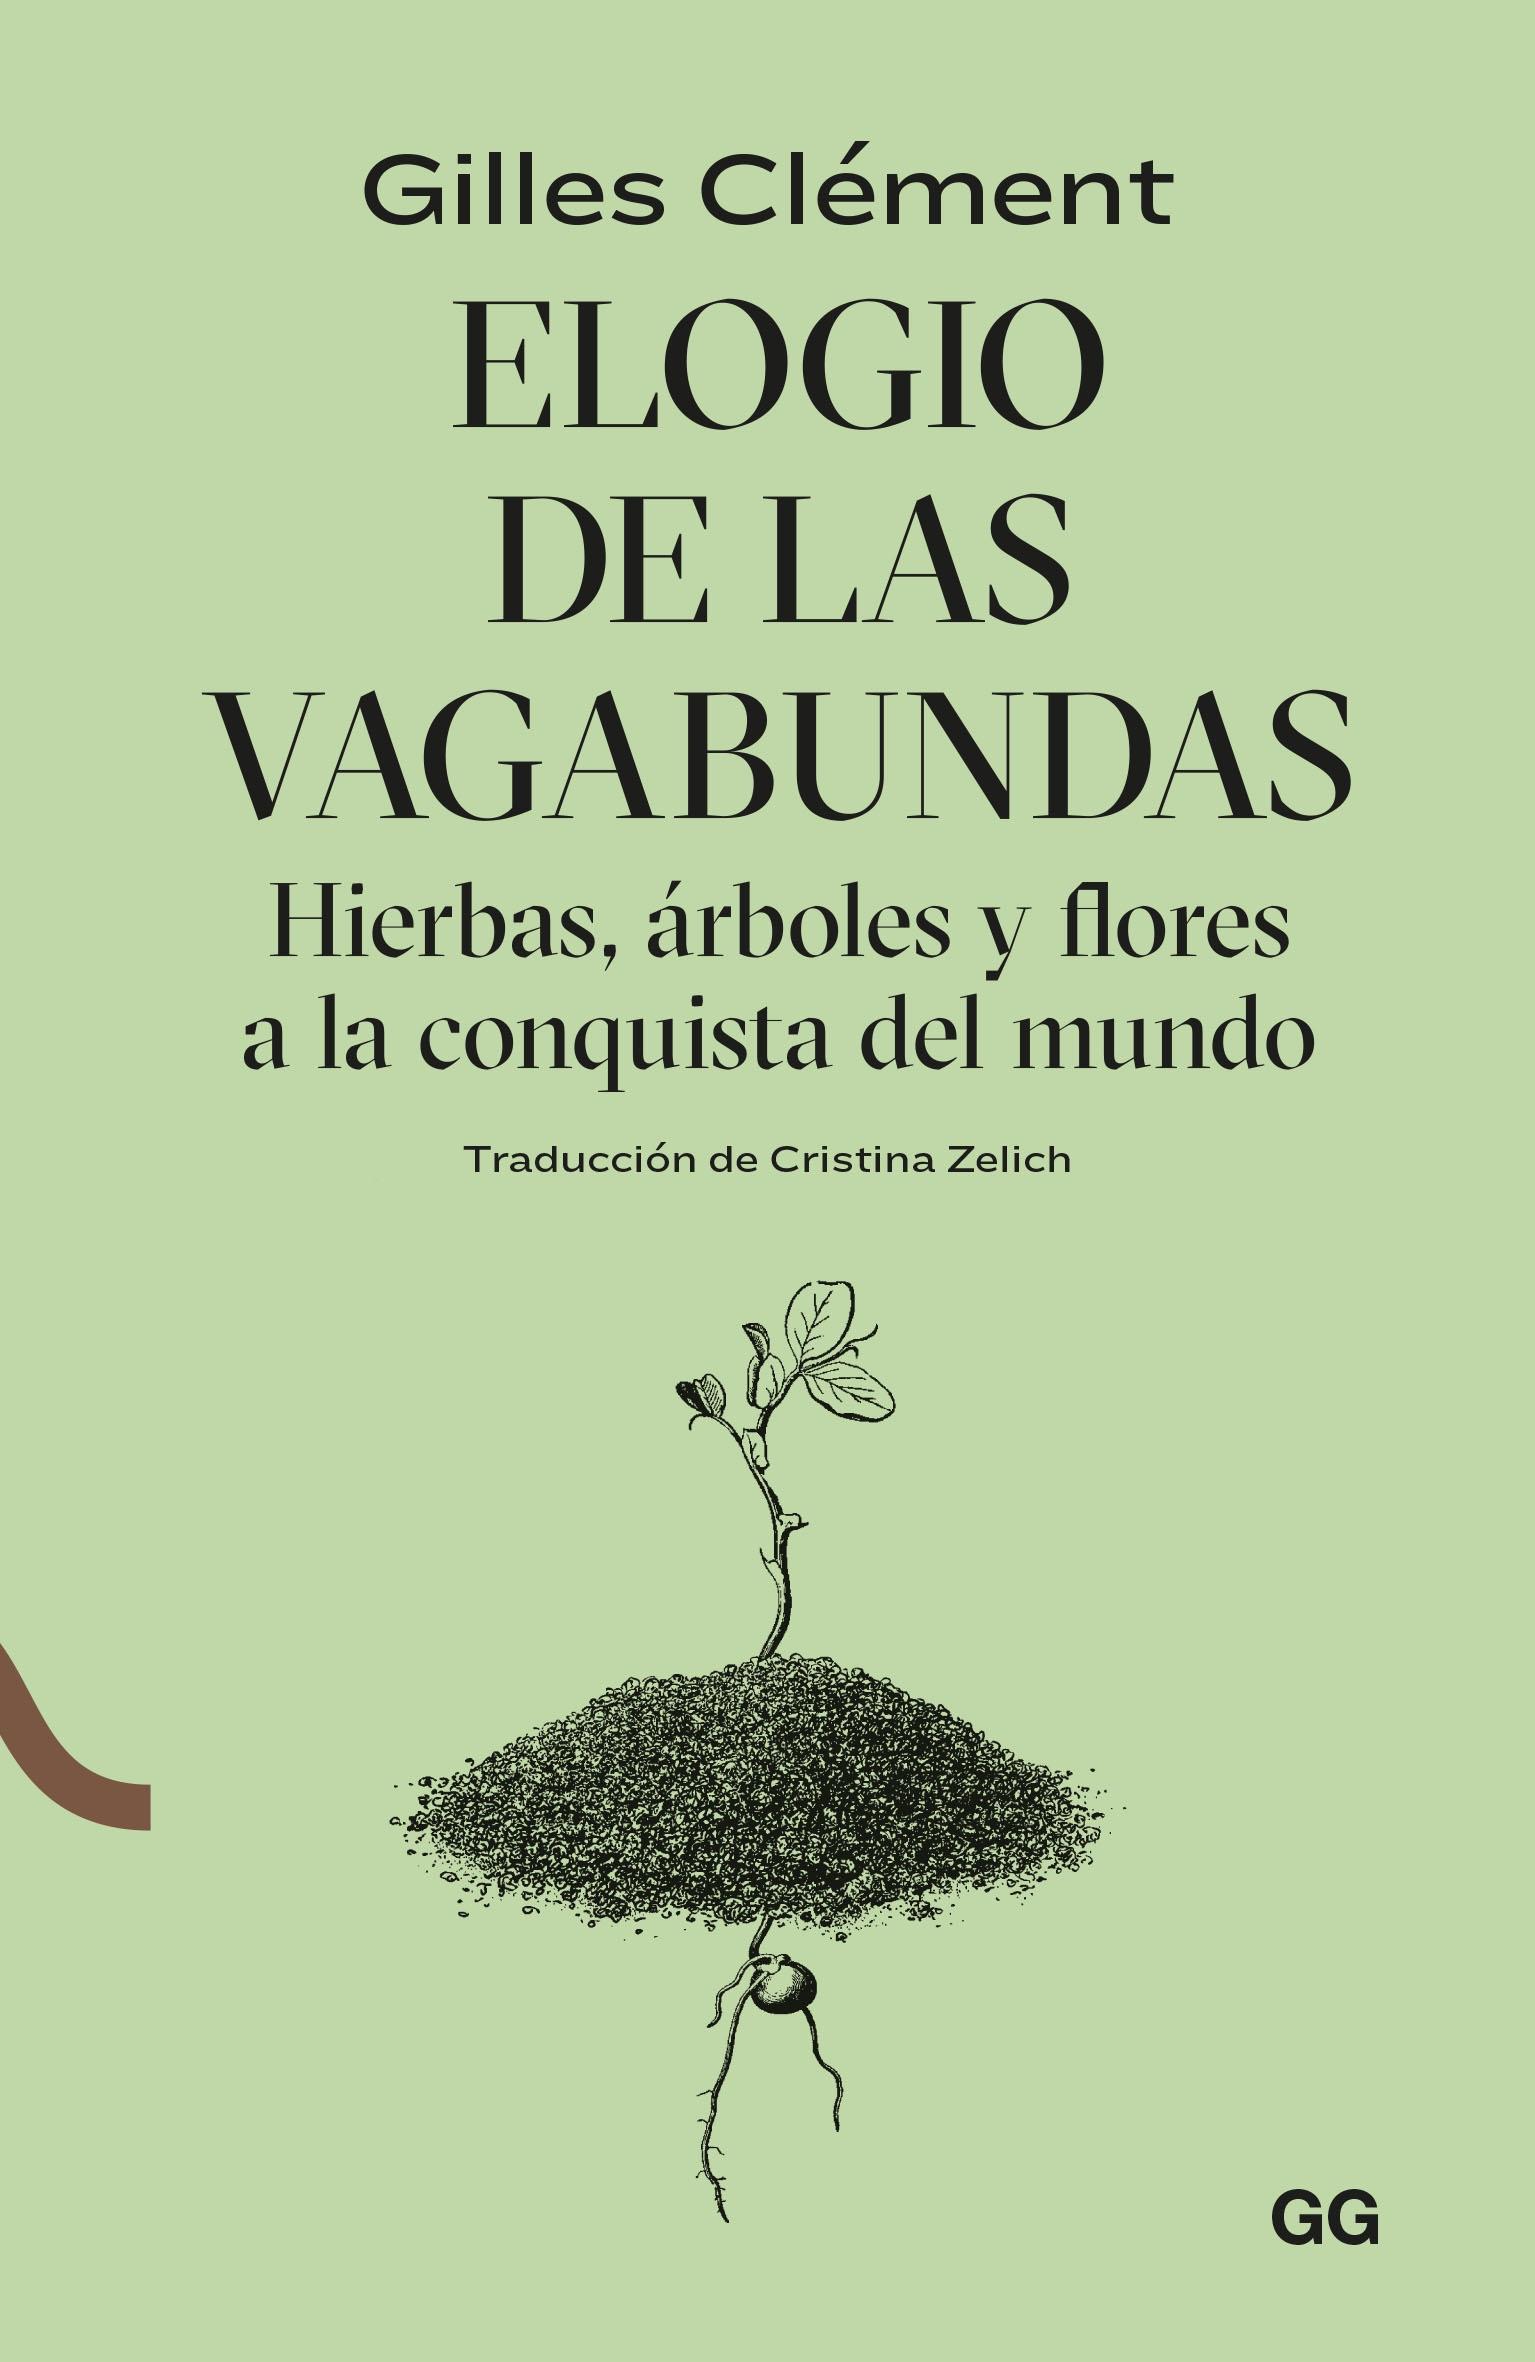 ELOGIO DE LAS VAGABUNDAS "HIERBAS, ARBOLES Y FLORES A LA CONQUISTA DEL MUNDO"